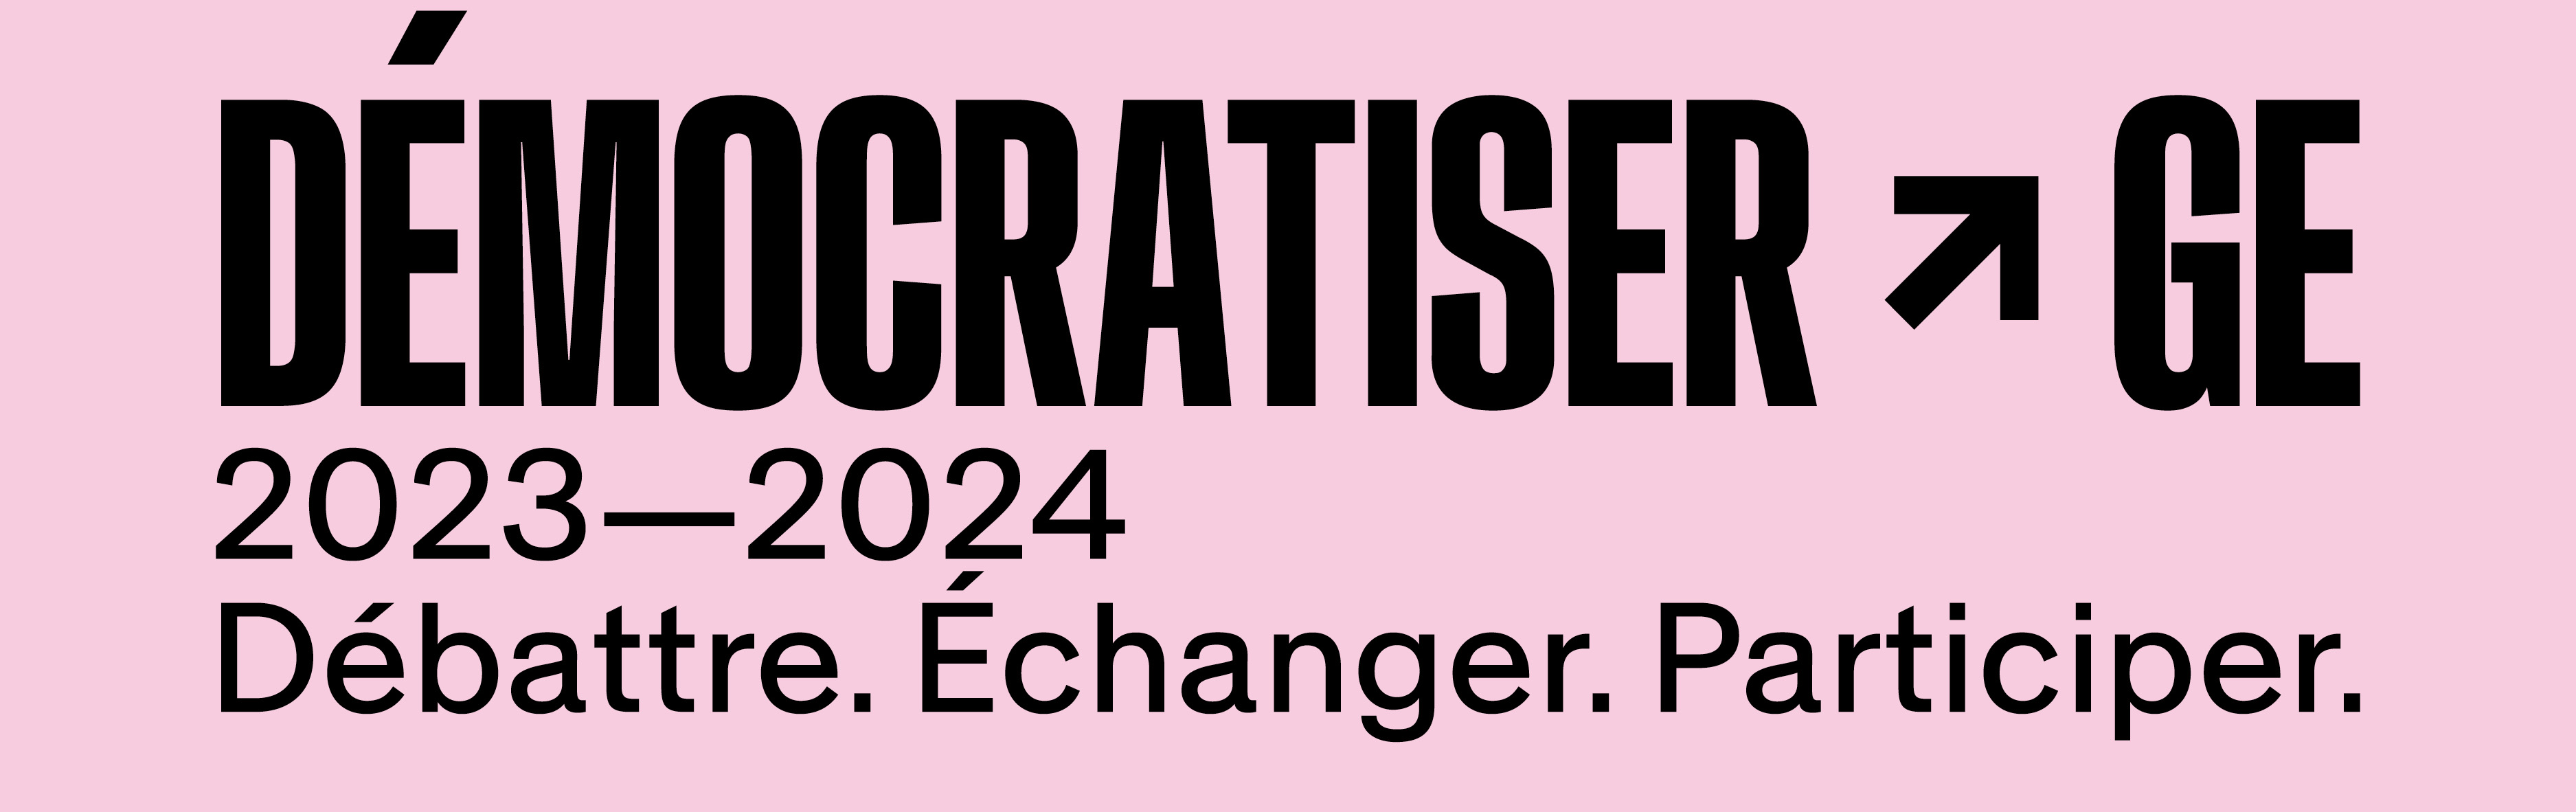 DÉMOCRATISER-GE 2023-2024 Débattre. Echanger. Participer.